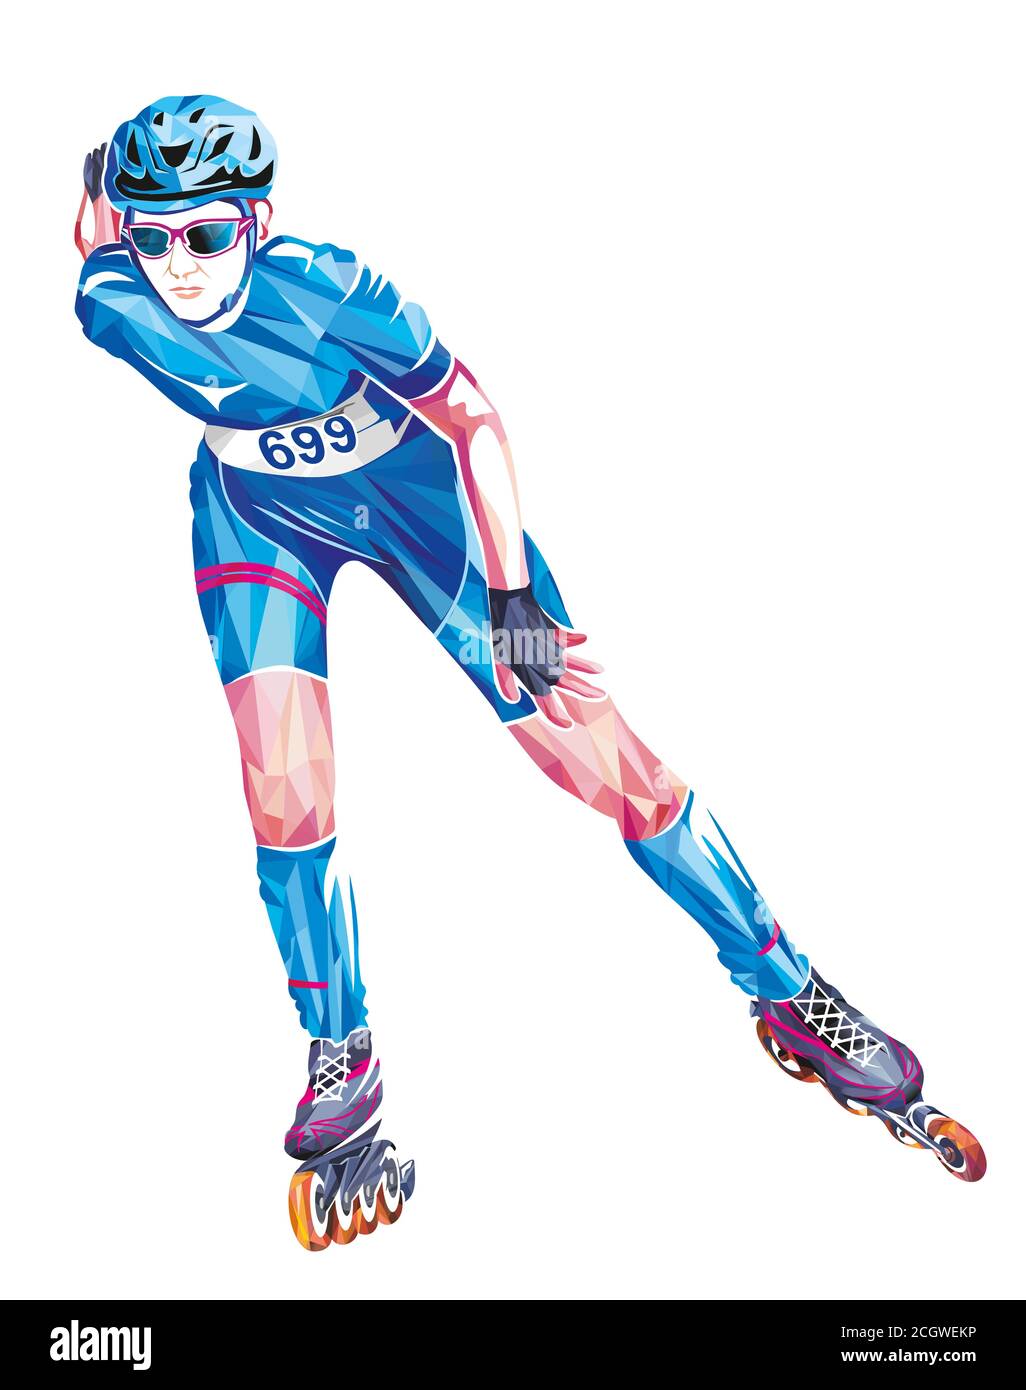 Thème sport. Design géométrique coloré du joueur professionnel de marathon de patinage à roulettes isolé sur fond blanc. Banque D'Images